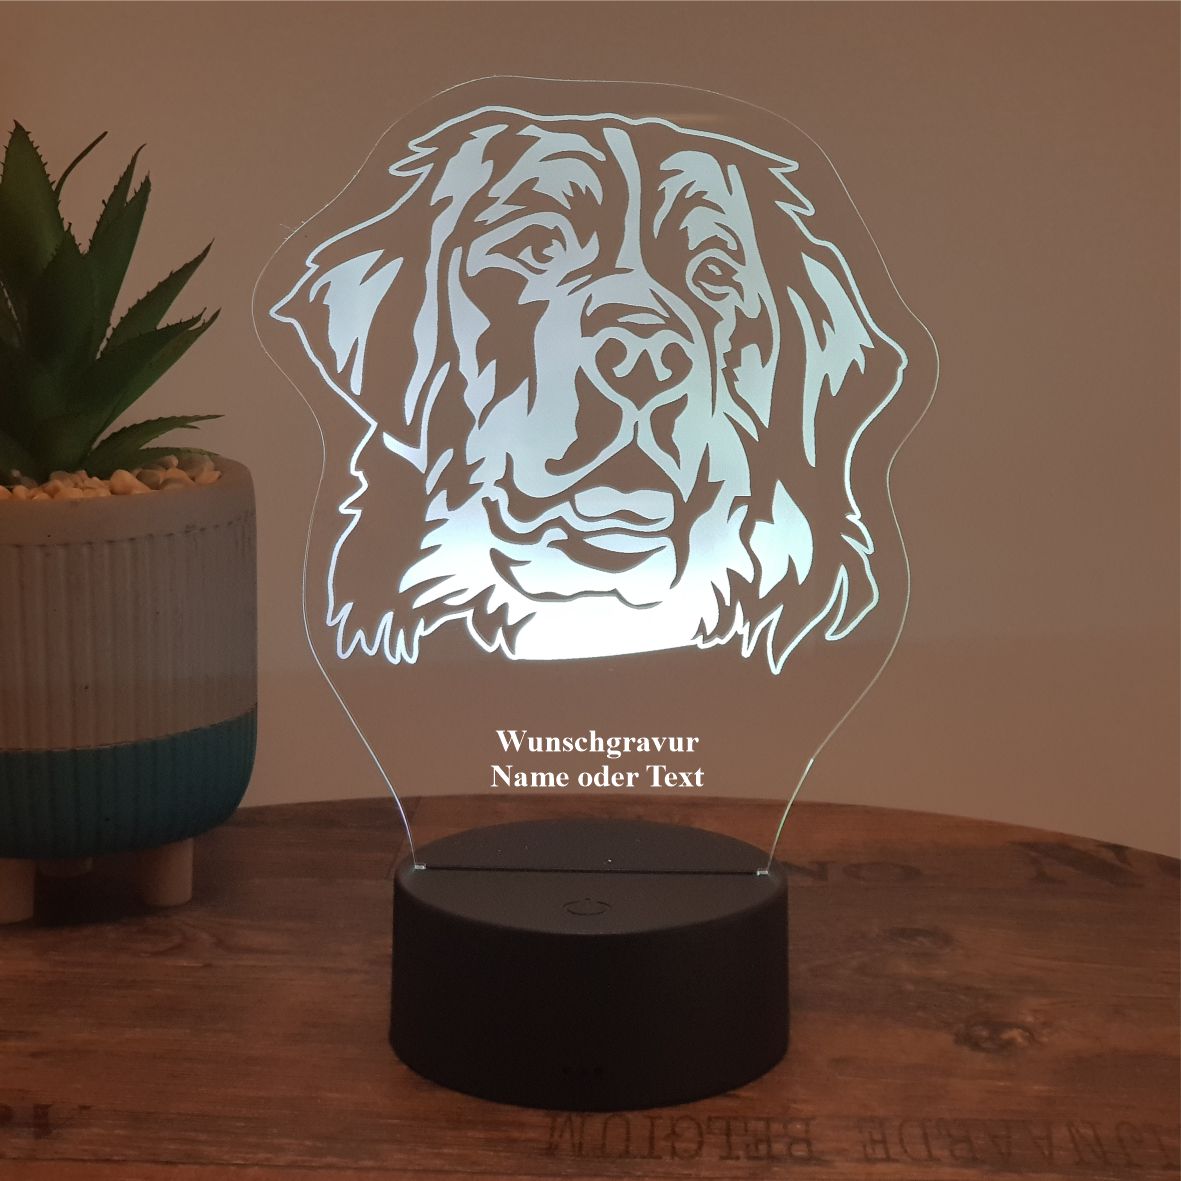 LED Lampe Berner Sennenhund - Lasereck